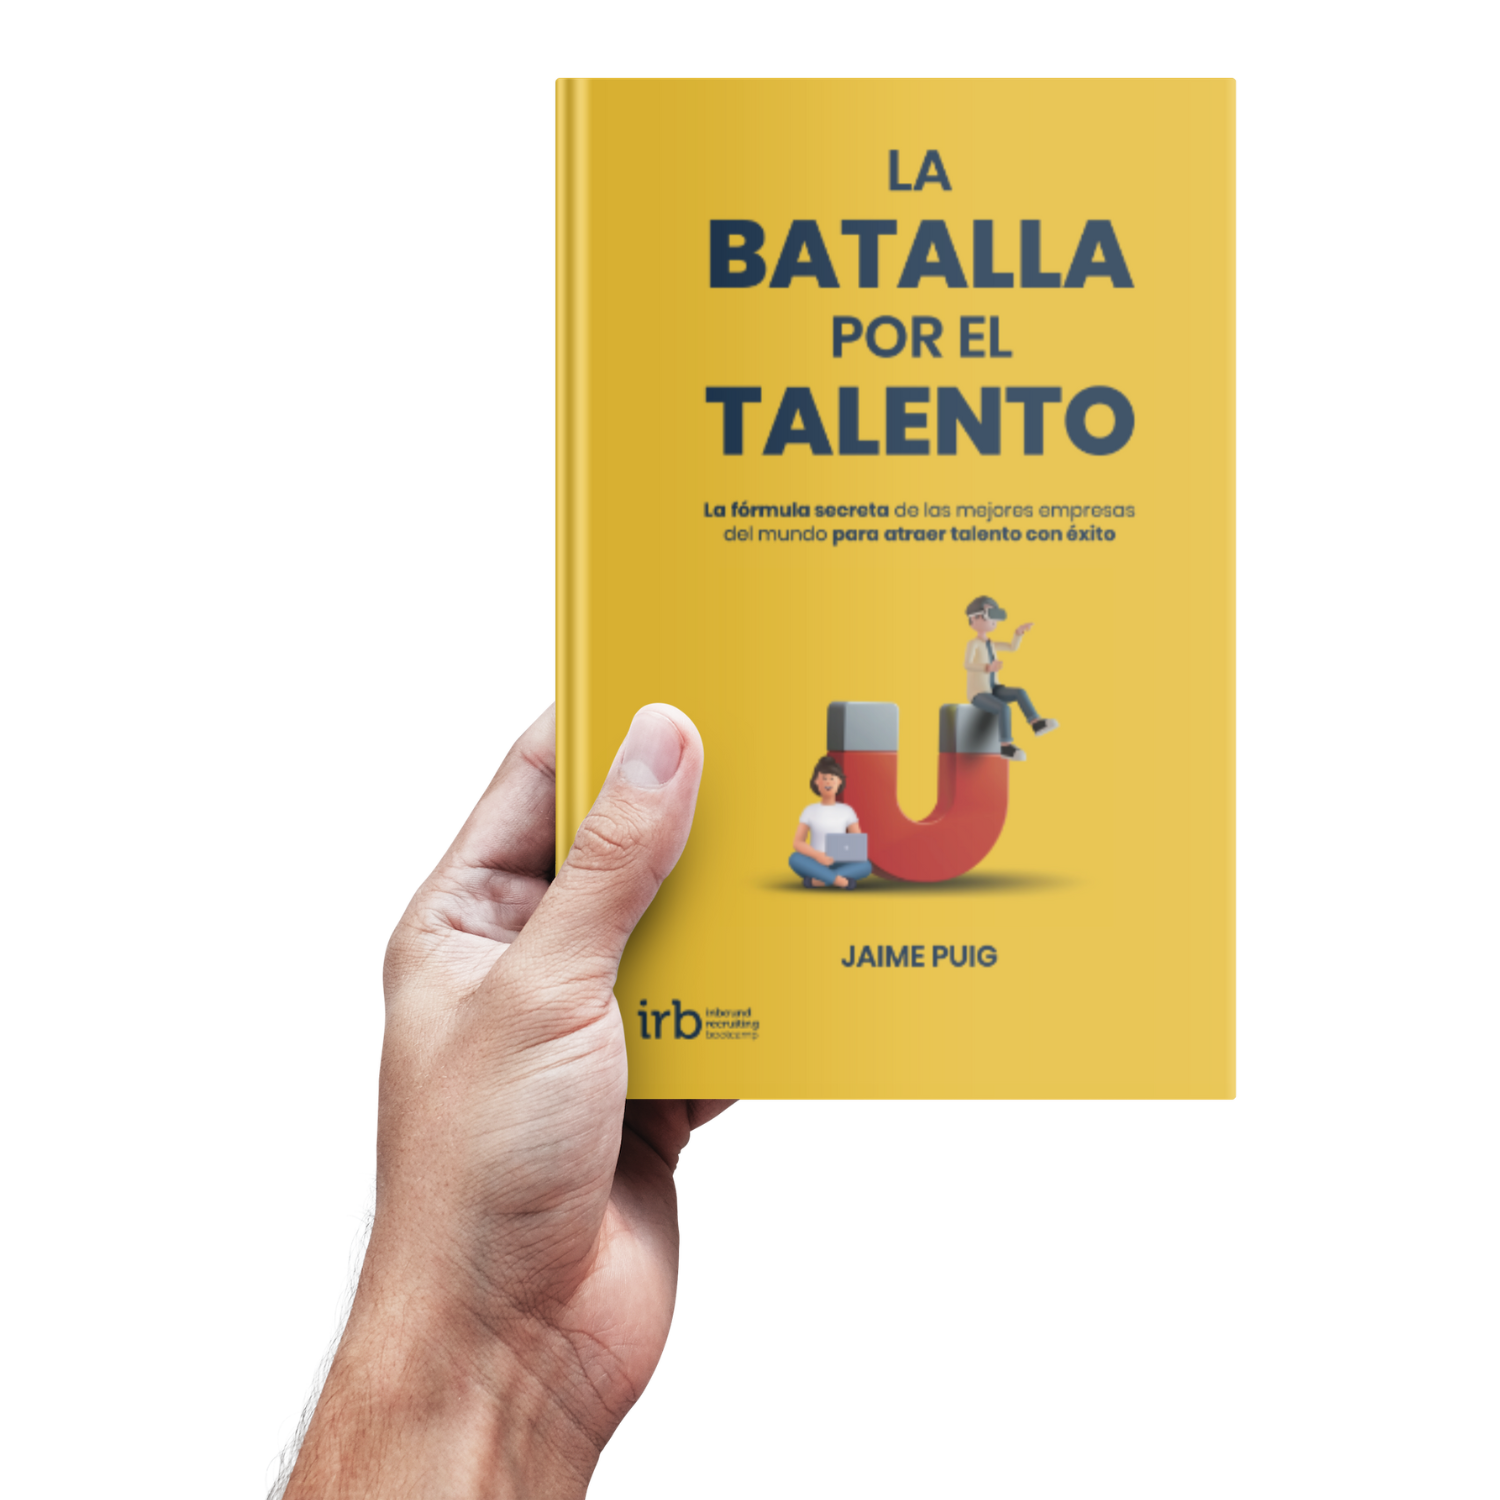 Libro "La Batalla por el Talento" escrito por Jaime Puig.